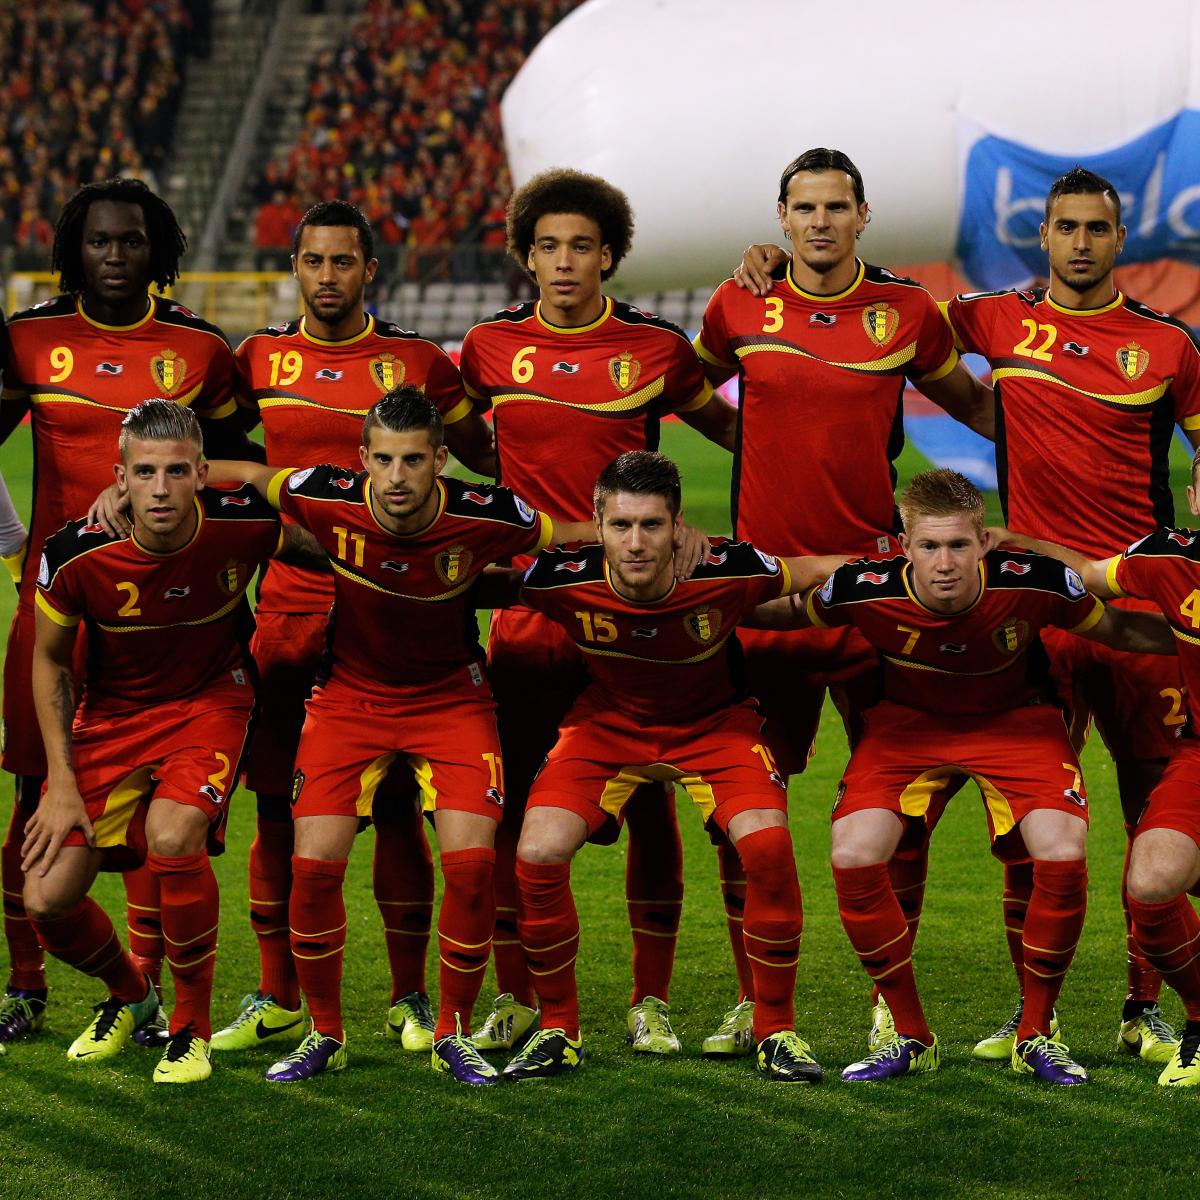 состав сборной бельгии по футболу